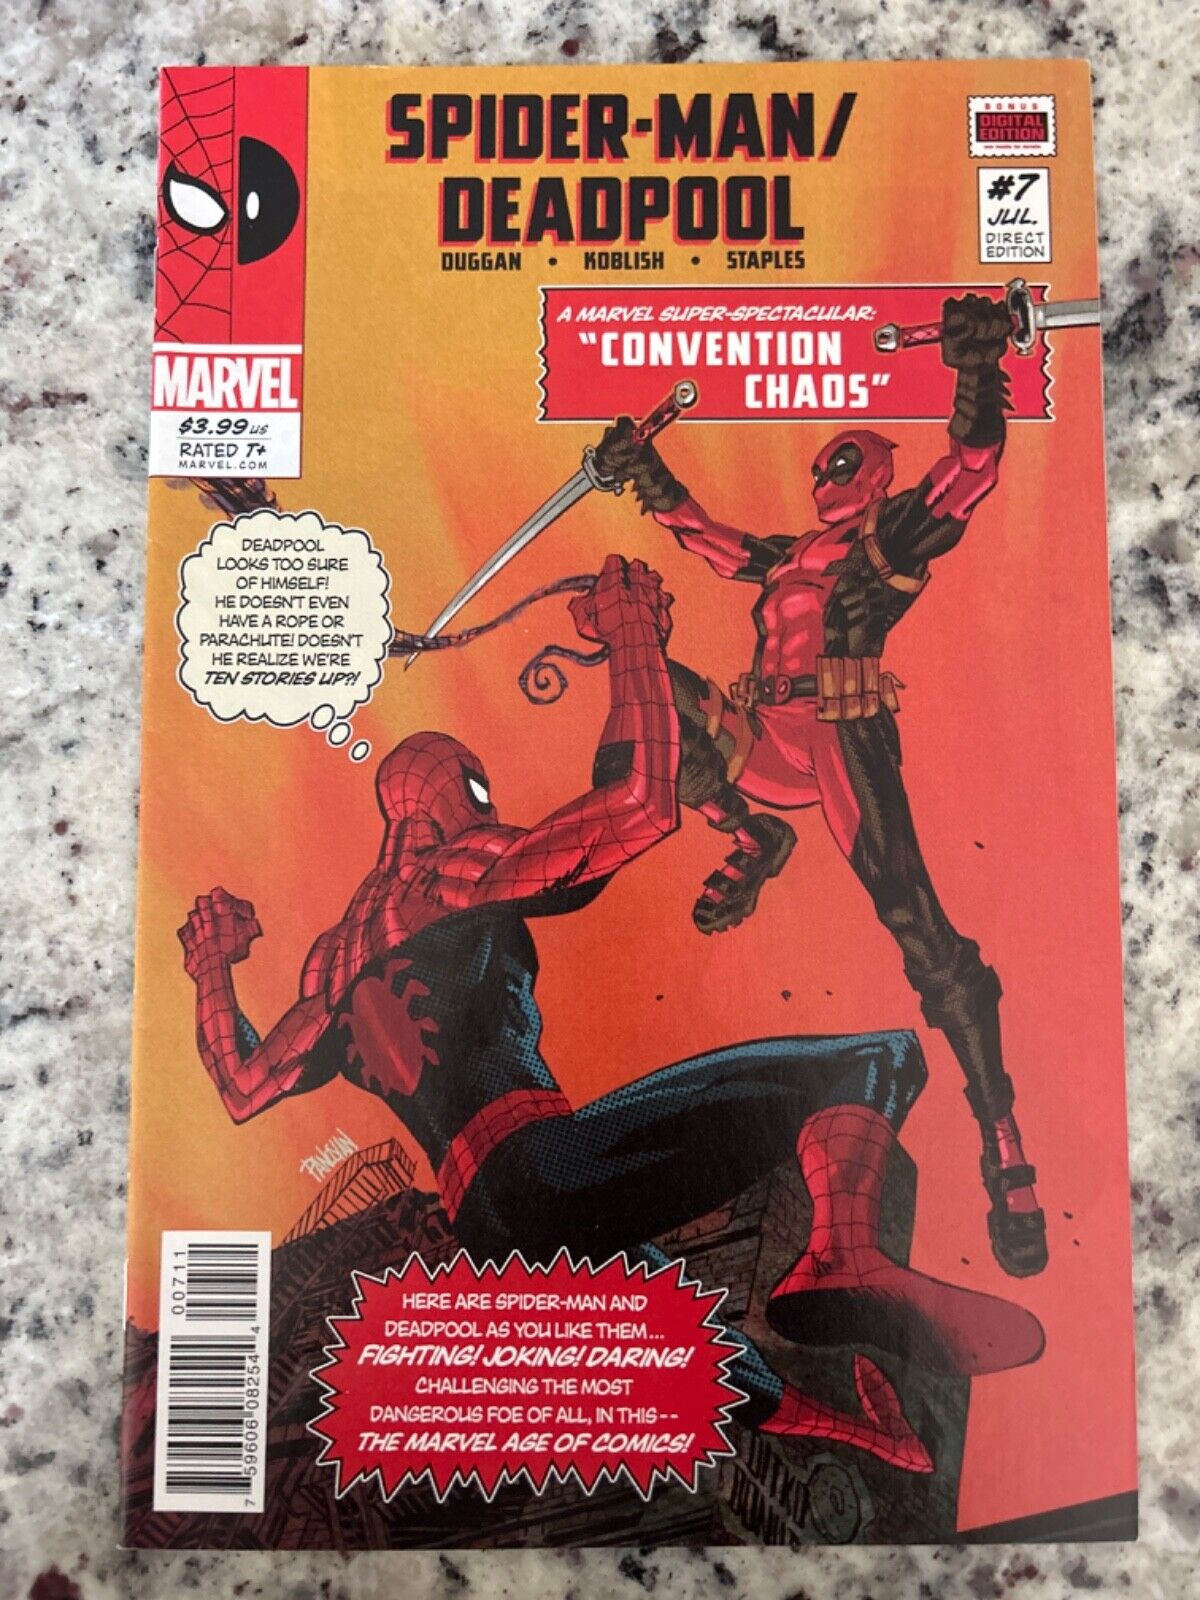 Spider-Man/Deadpool #7 Vol. 1 (Marvel, 2016) VF/VF+